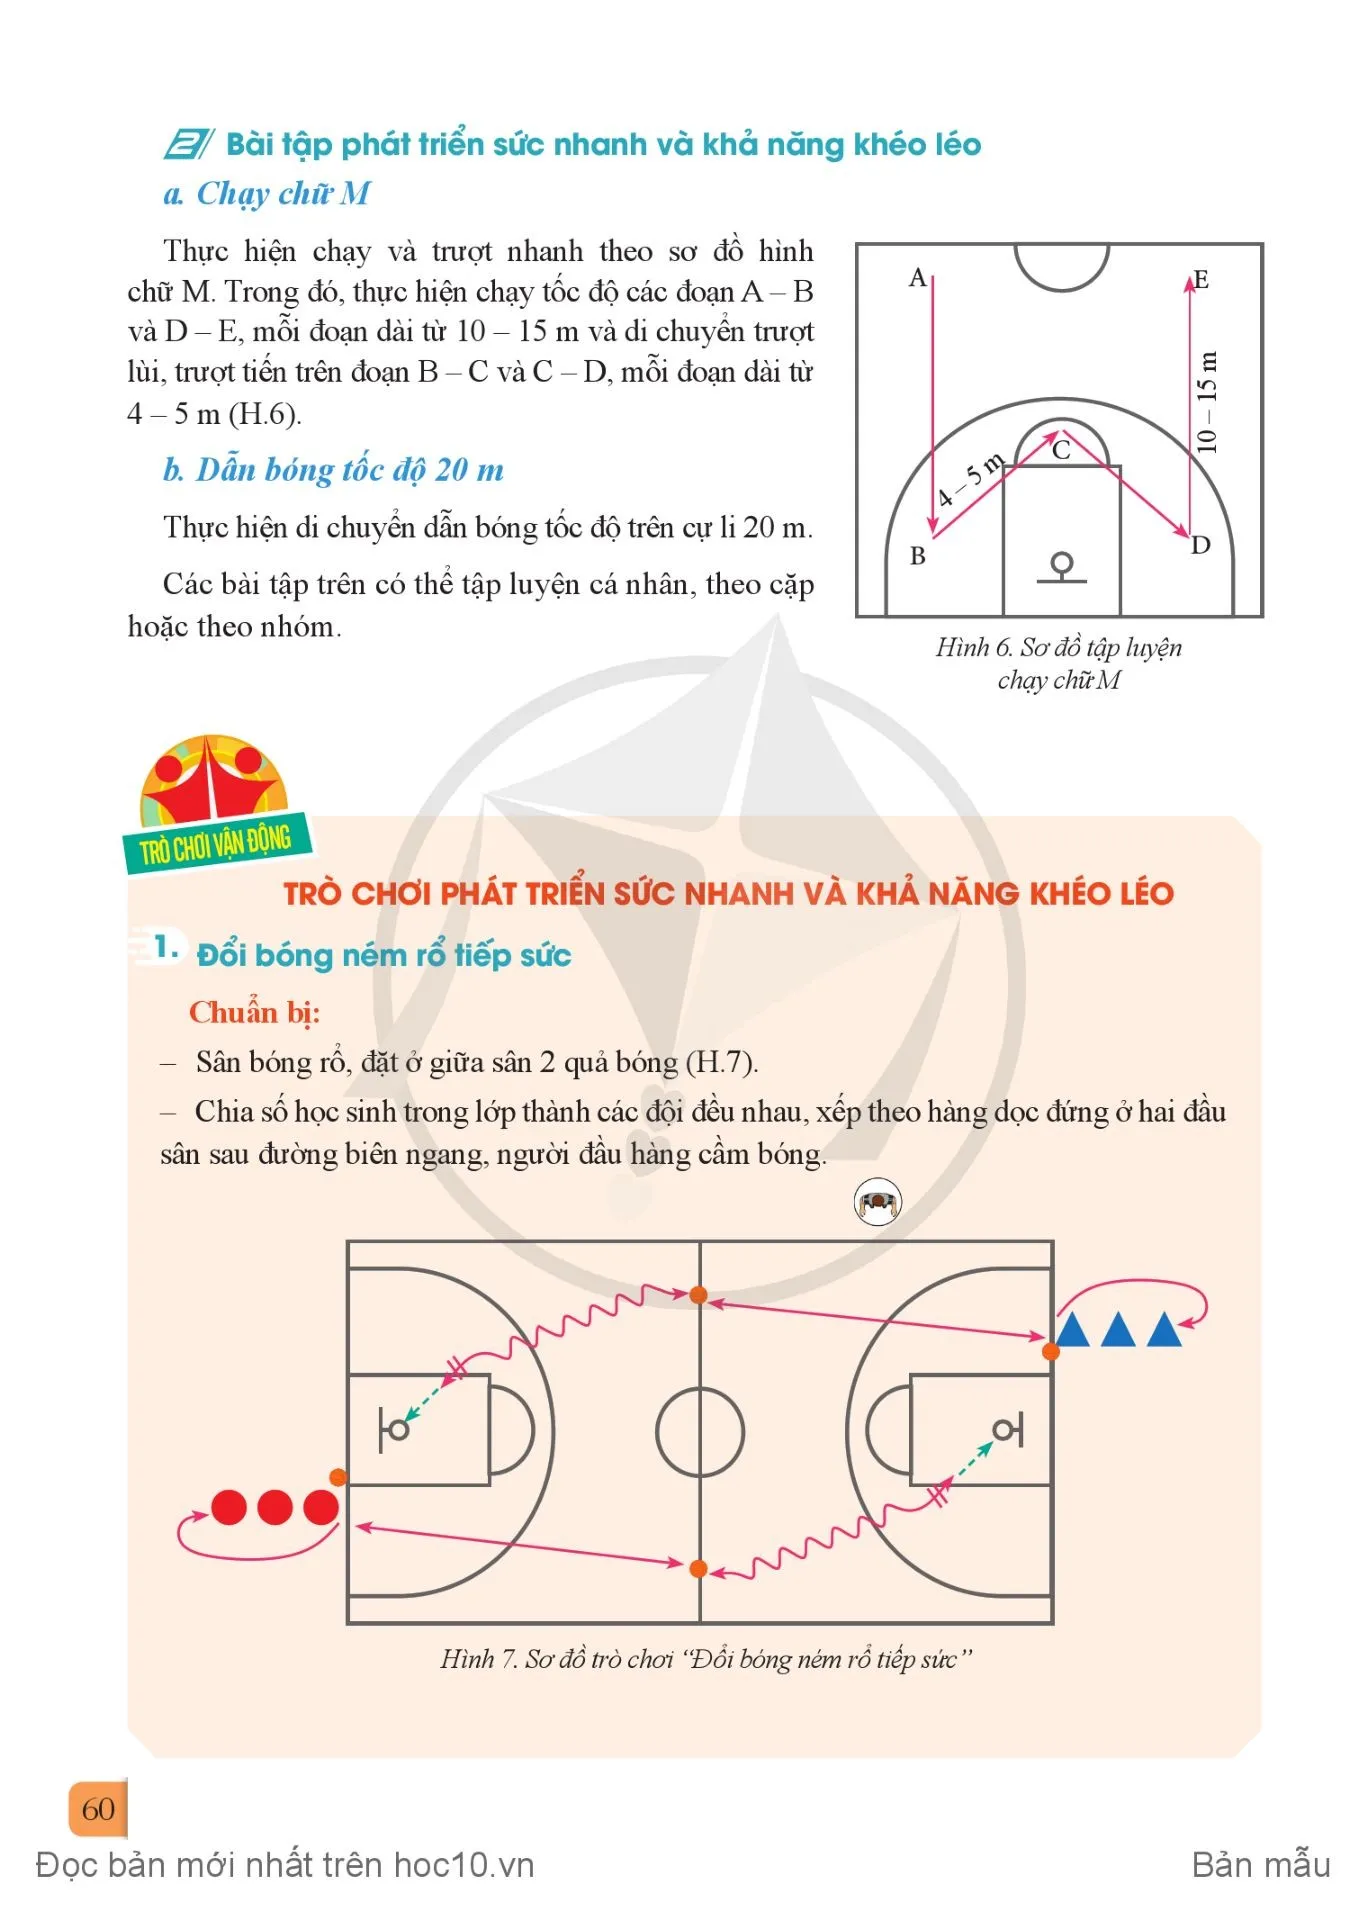 Bài 2. Thi đấu trong môn Bóng rổ